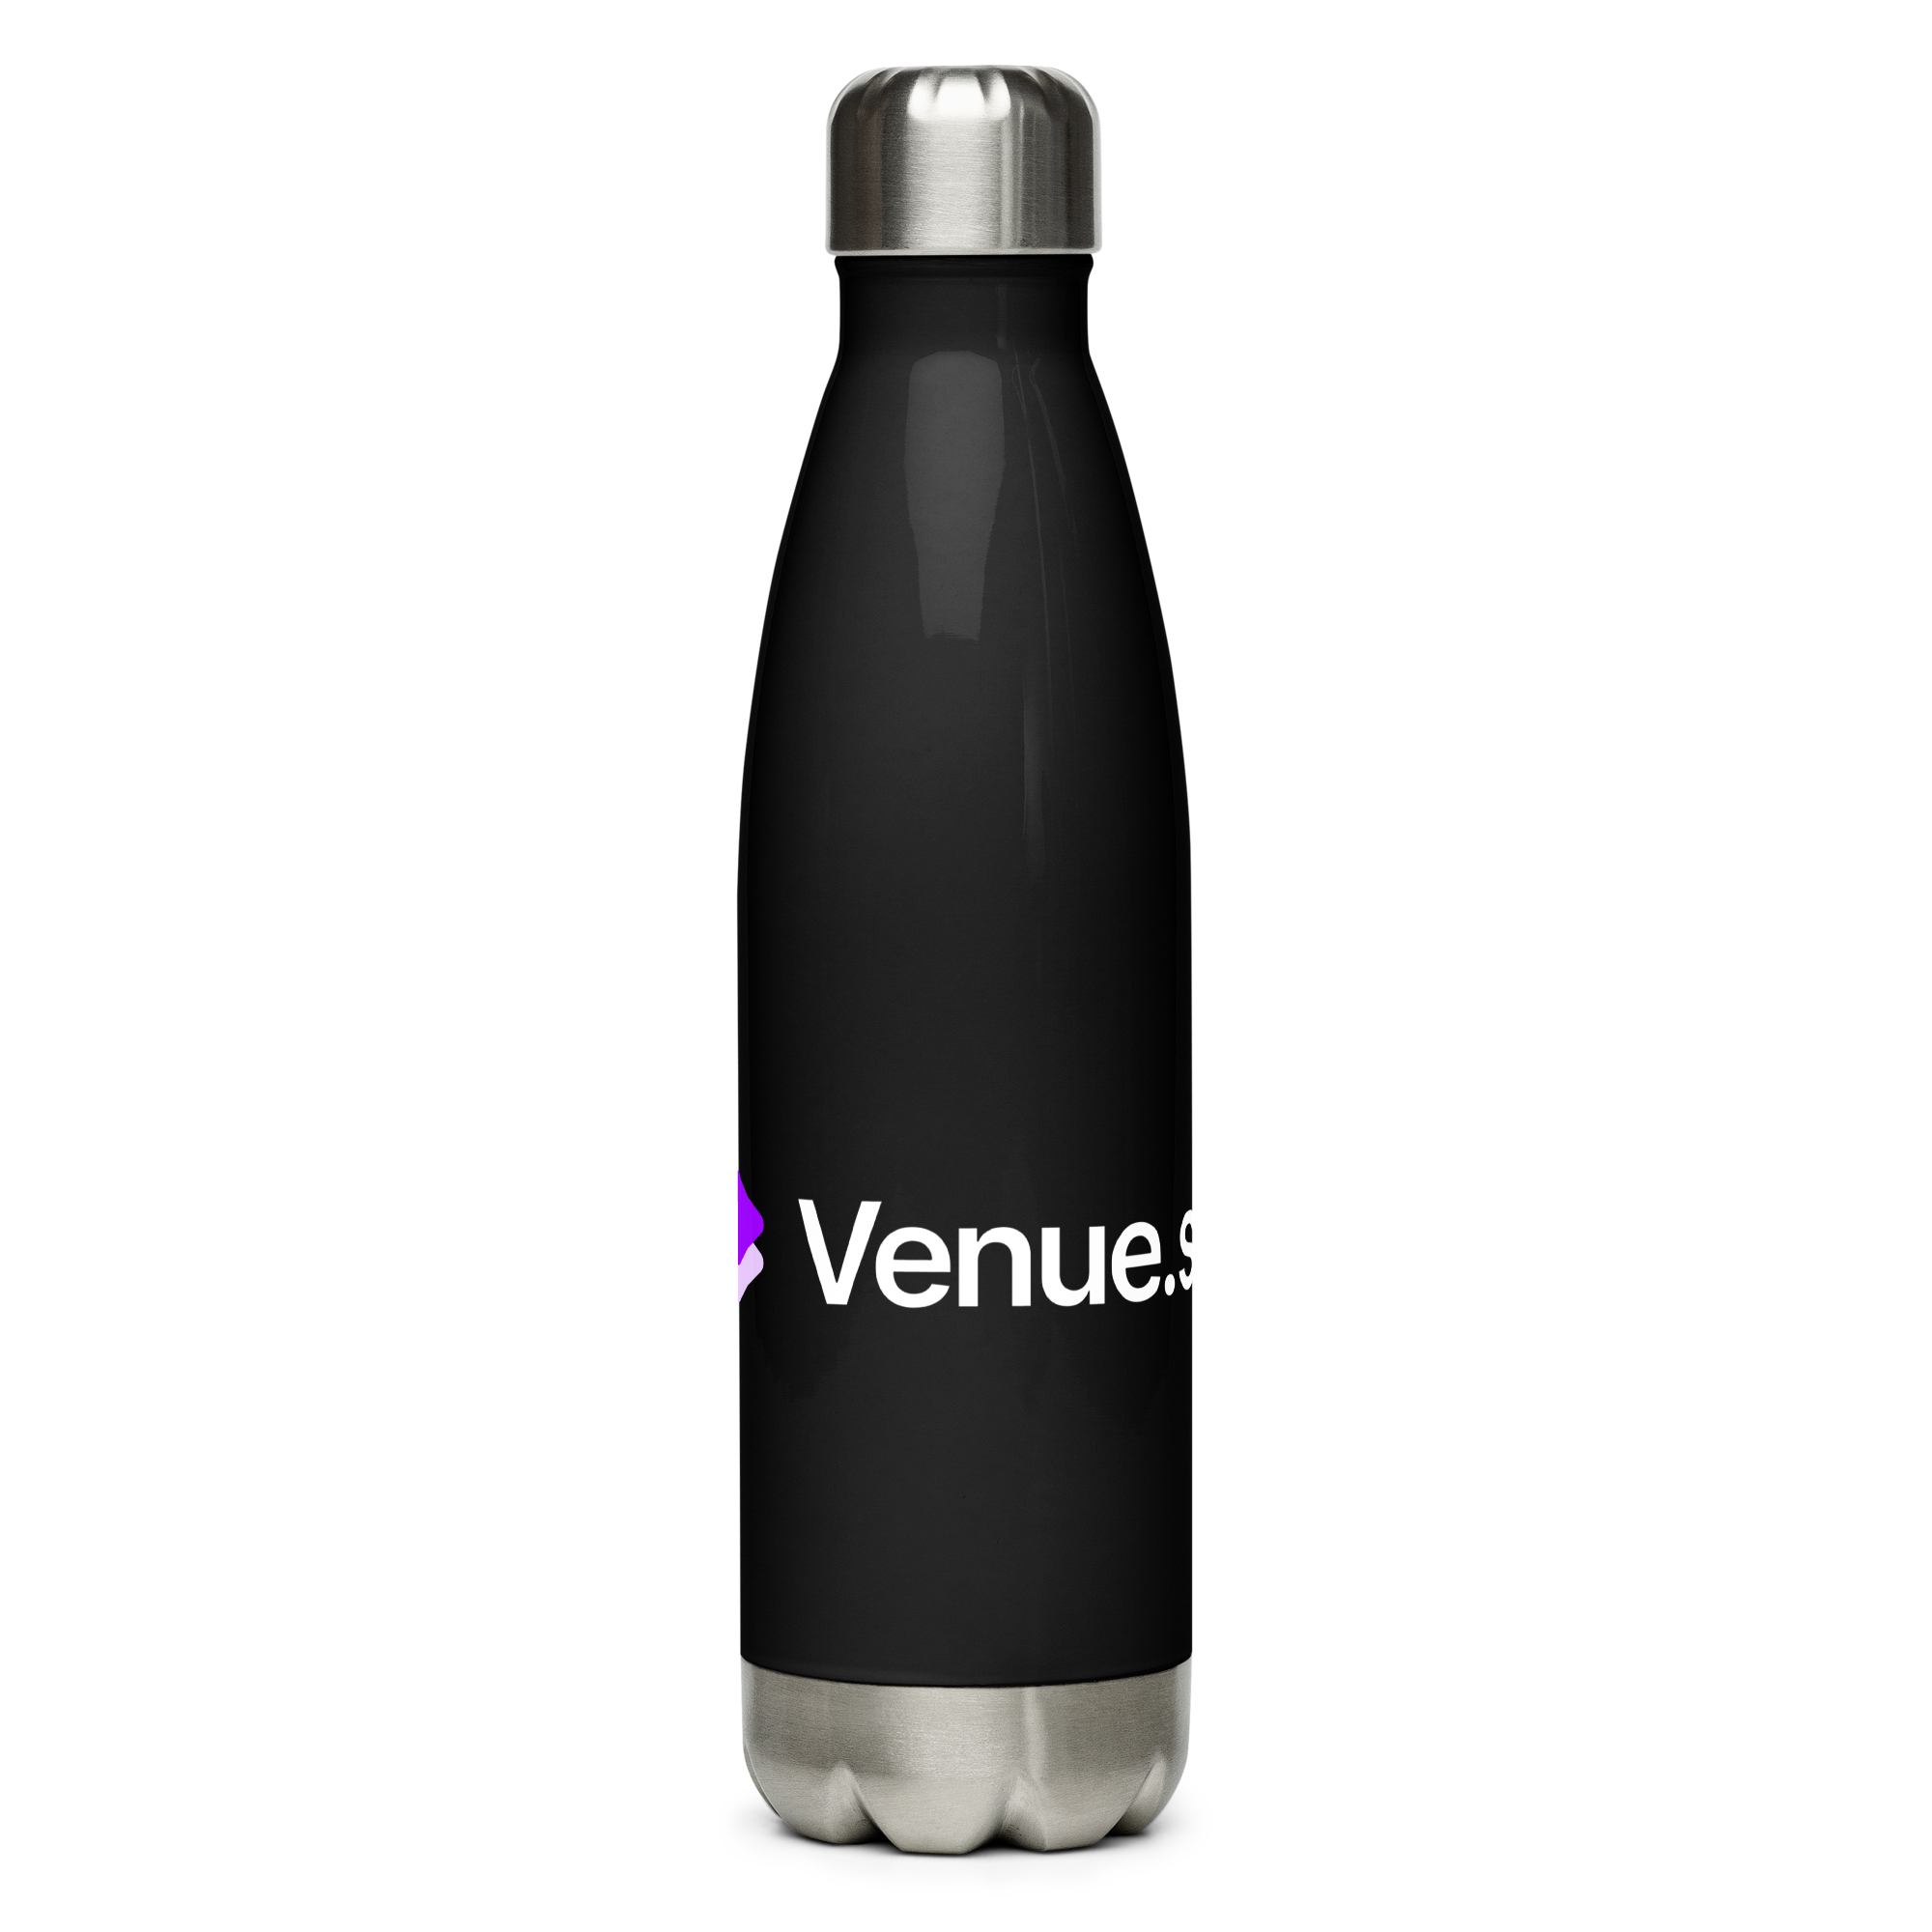 Venue.sh - Stainless Steel Water Bottle